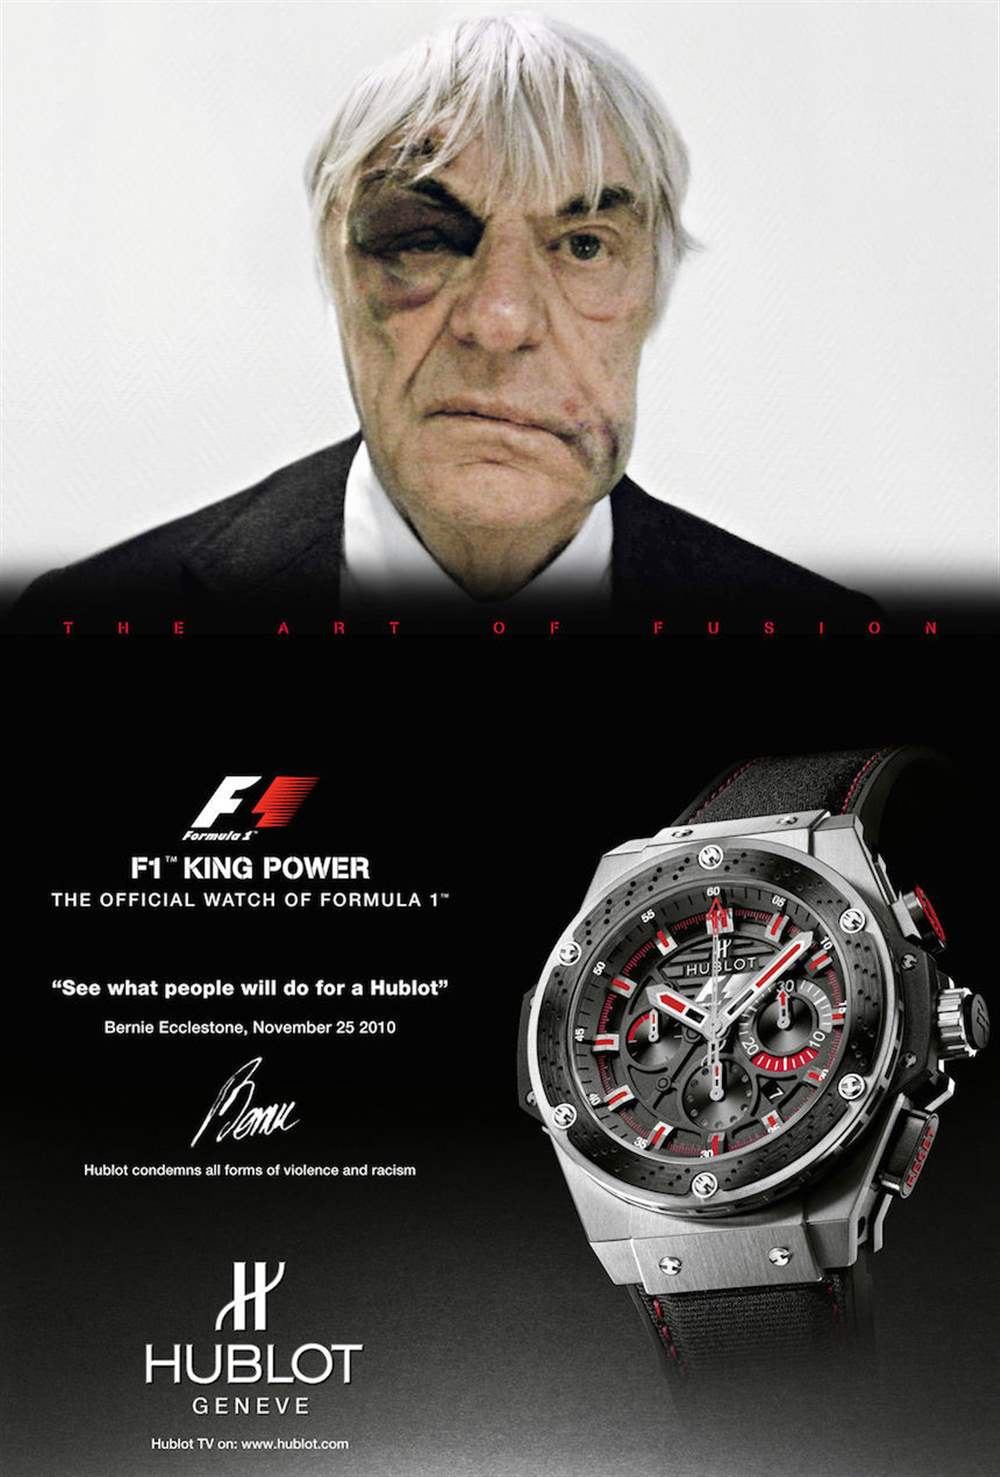 Hublot-Bernie-Ecclestone-Advertisement-Formula-1